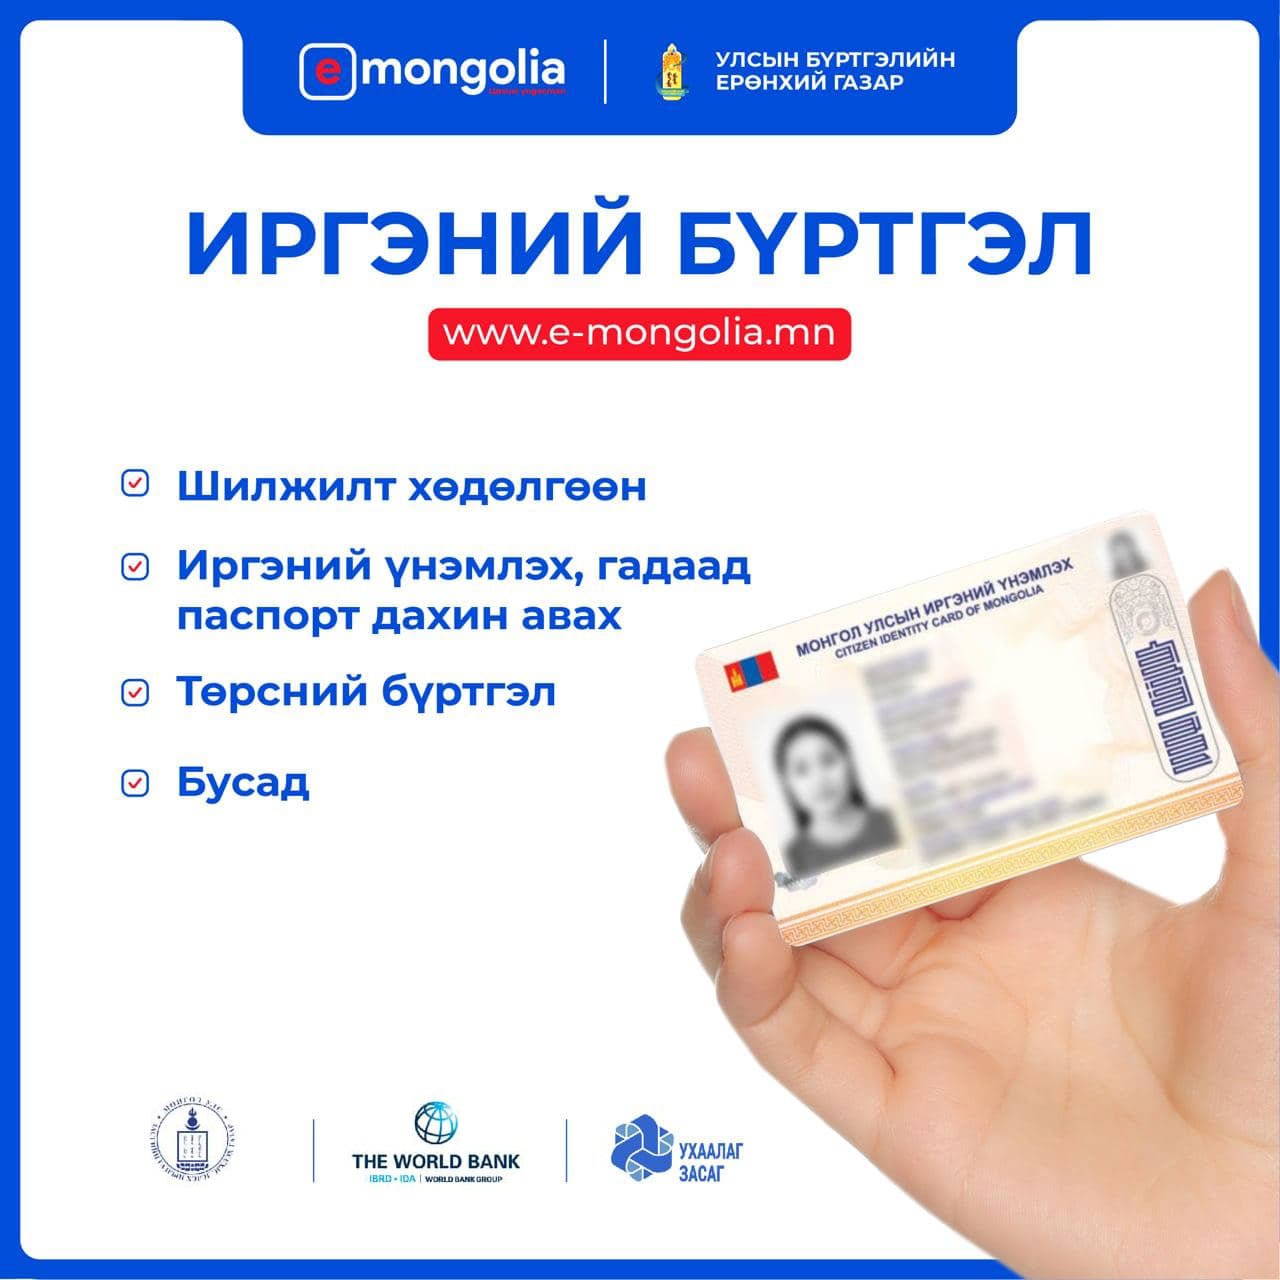 E-Mongolia порталаас та улсын бүртгэлийн ямар ямар үйлчилгээг авах боломжтой вэ?